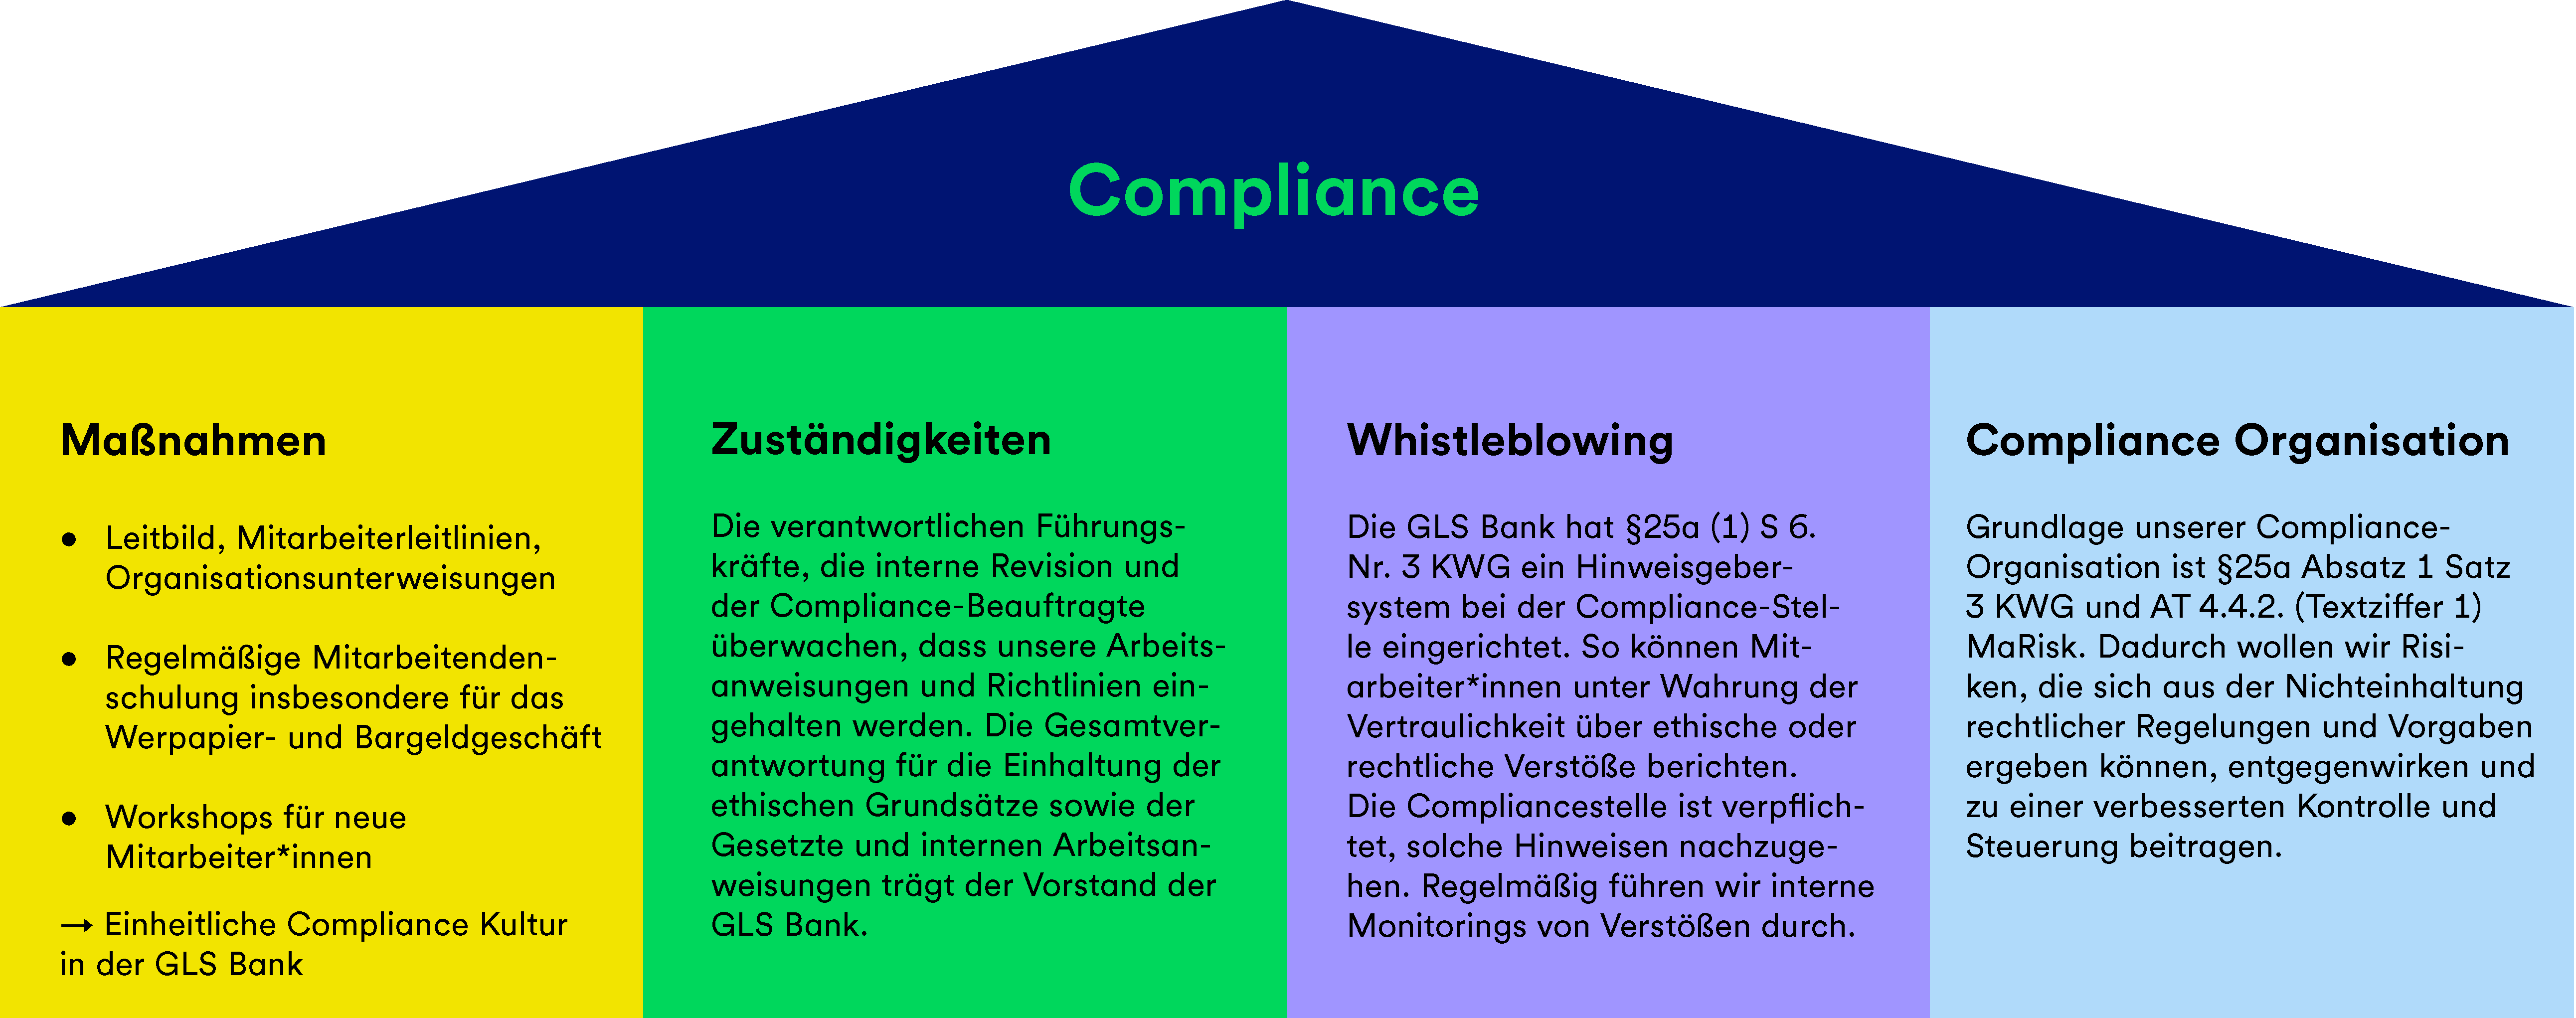 Eine Grafik, die die Compliance-Aspekte Maßnahmen, Zuständigkeiten, Whistleblowing und Compliance Organisation beschreibt.